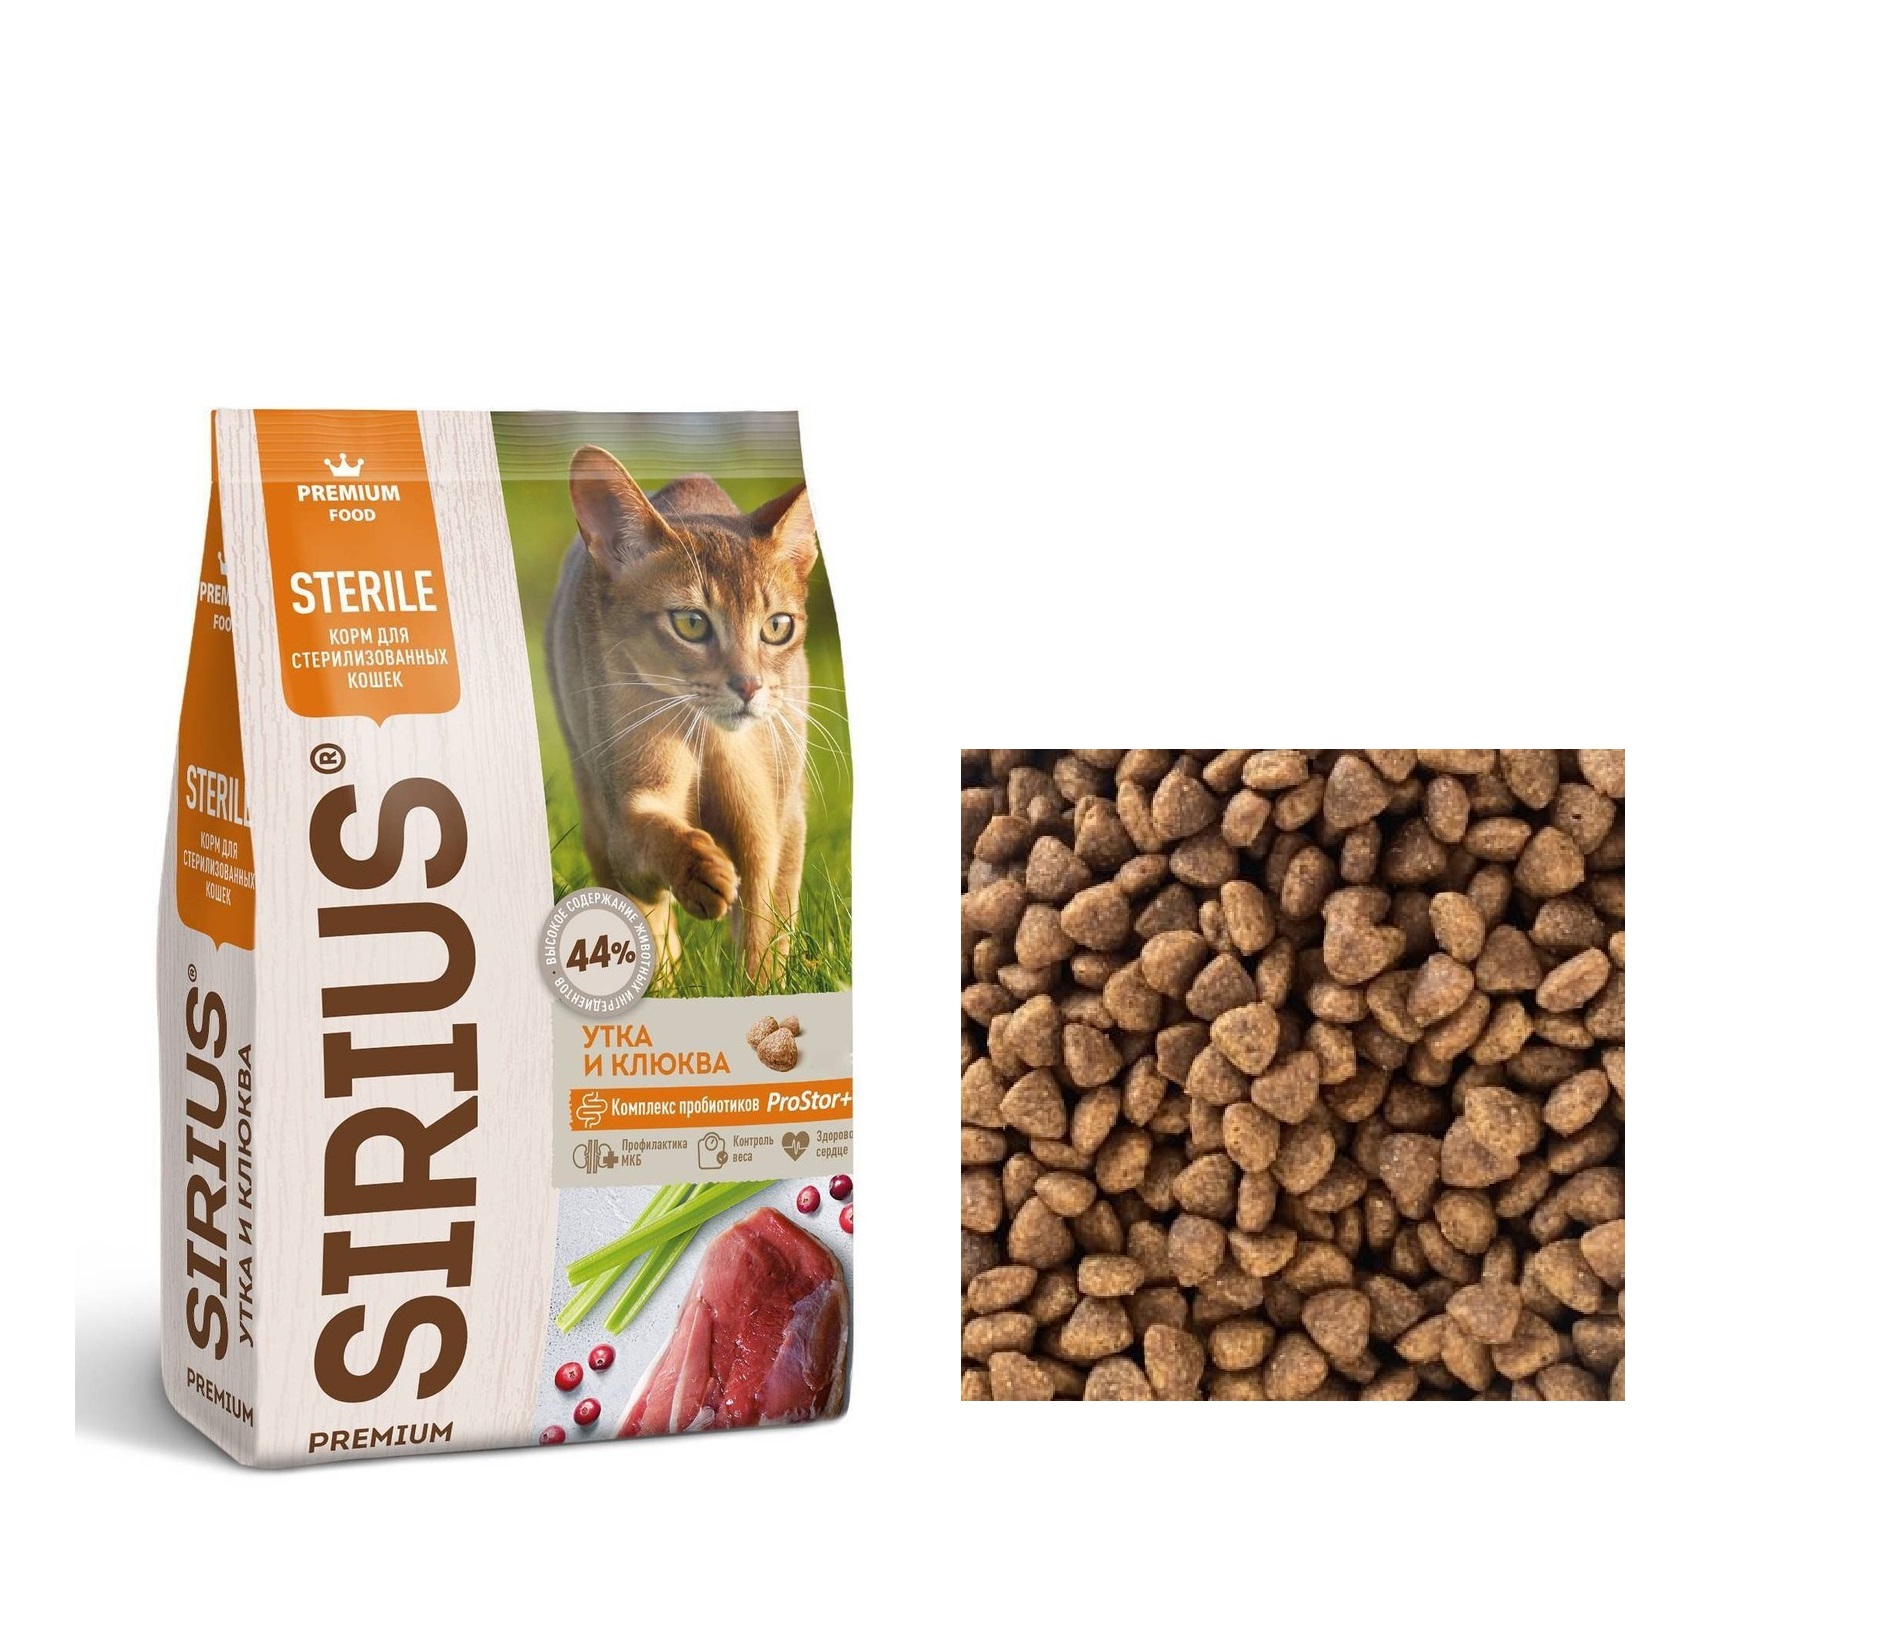 Сириус для кошек Стерилизованных Утка/Клюква, весовой 1кг (Sirius)